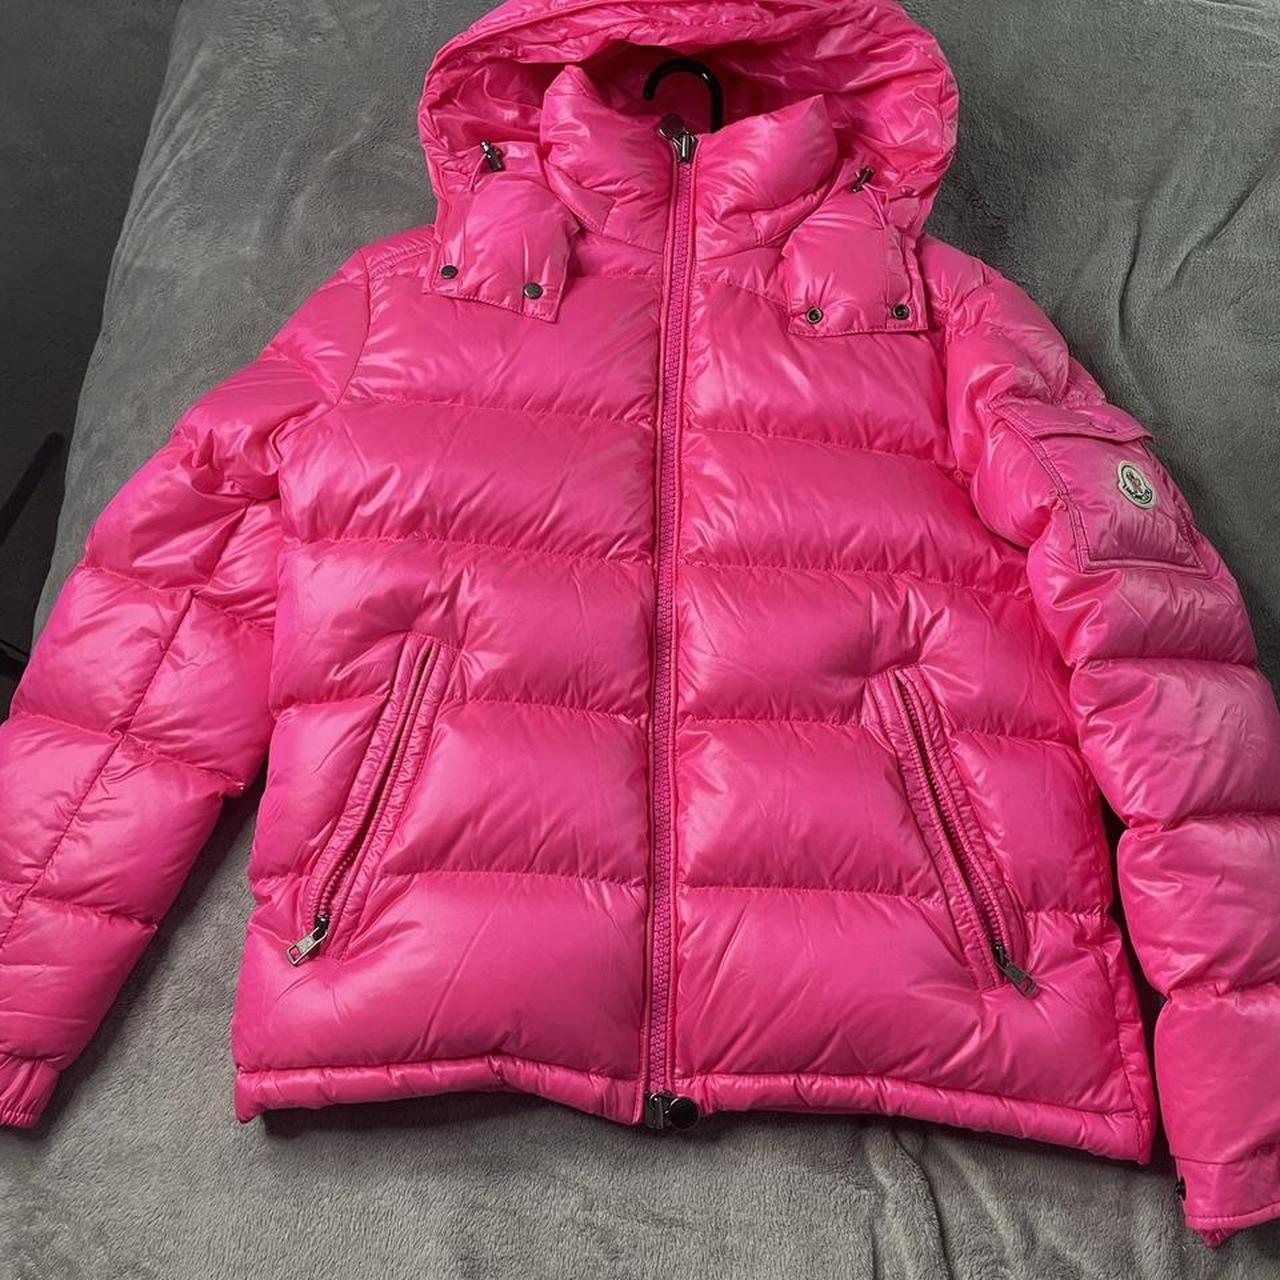 Pink Moncler Maya Size 2 $825 OBO #moncler... - Depop